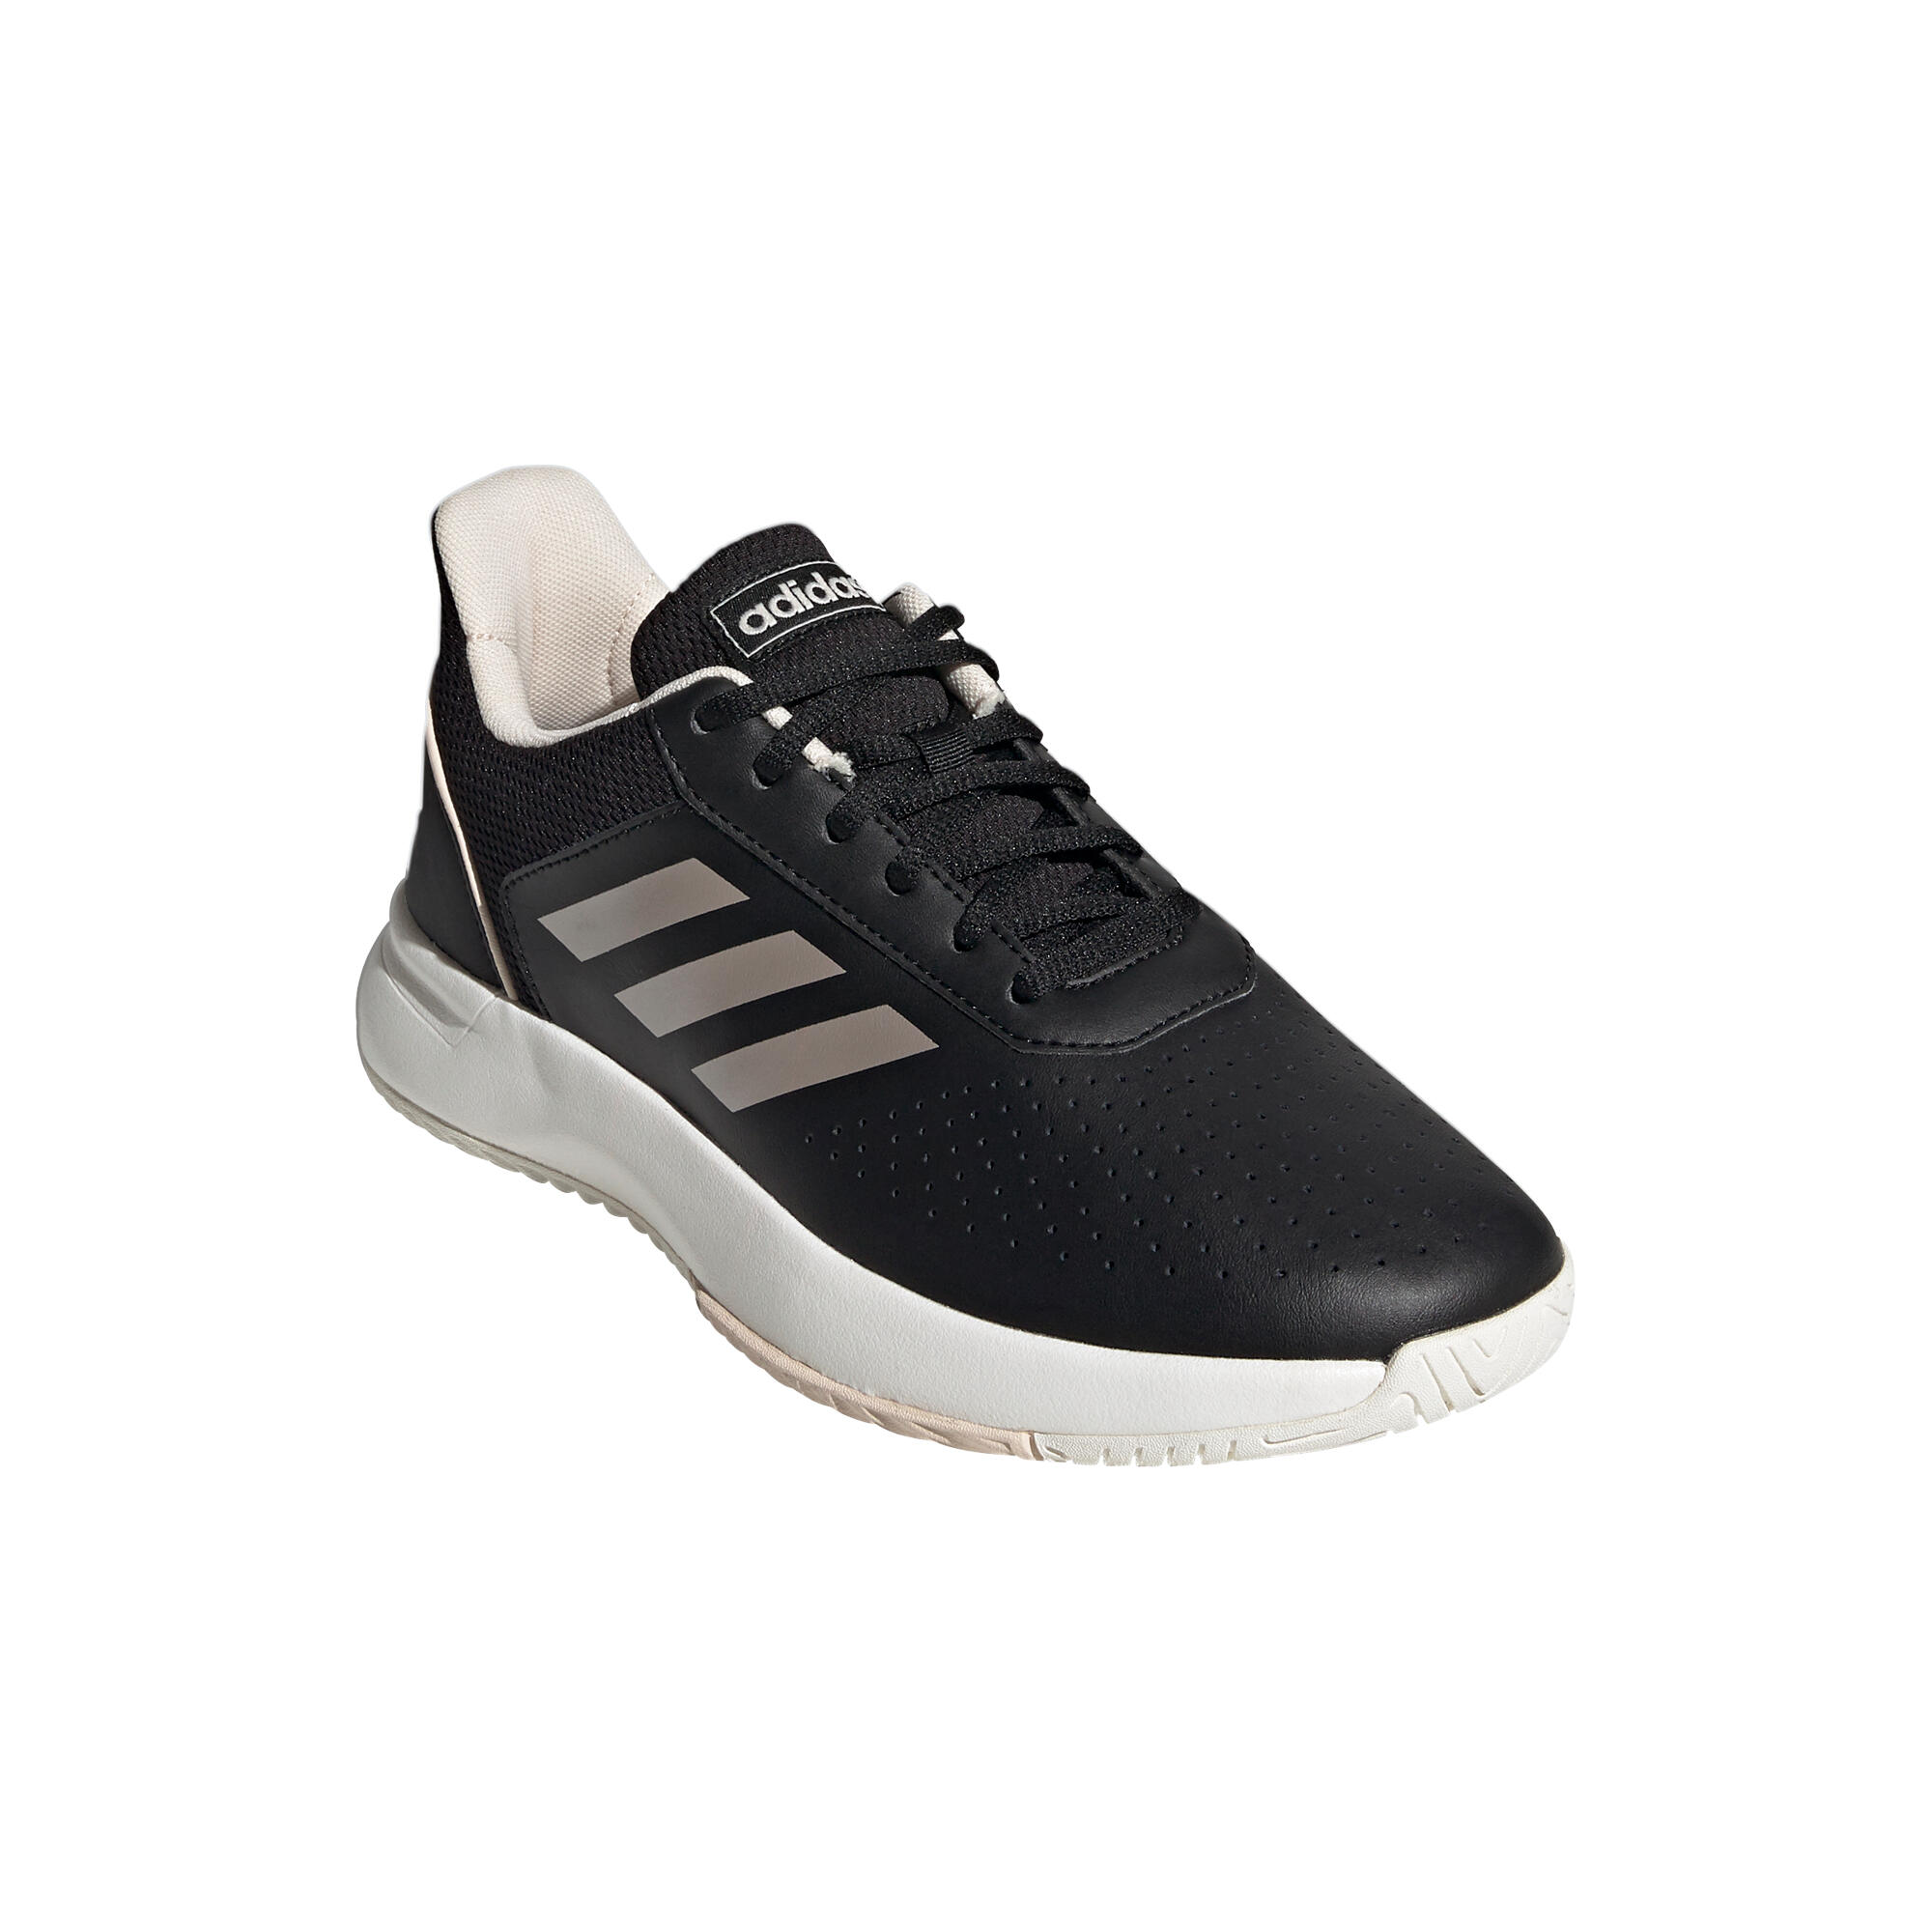 Women's Tennis Shoes Courtsmash - Black 2/10